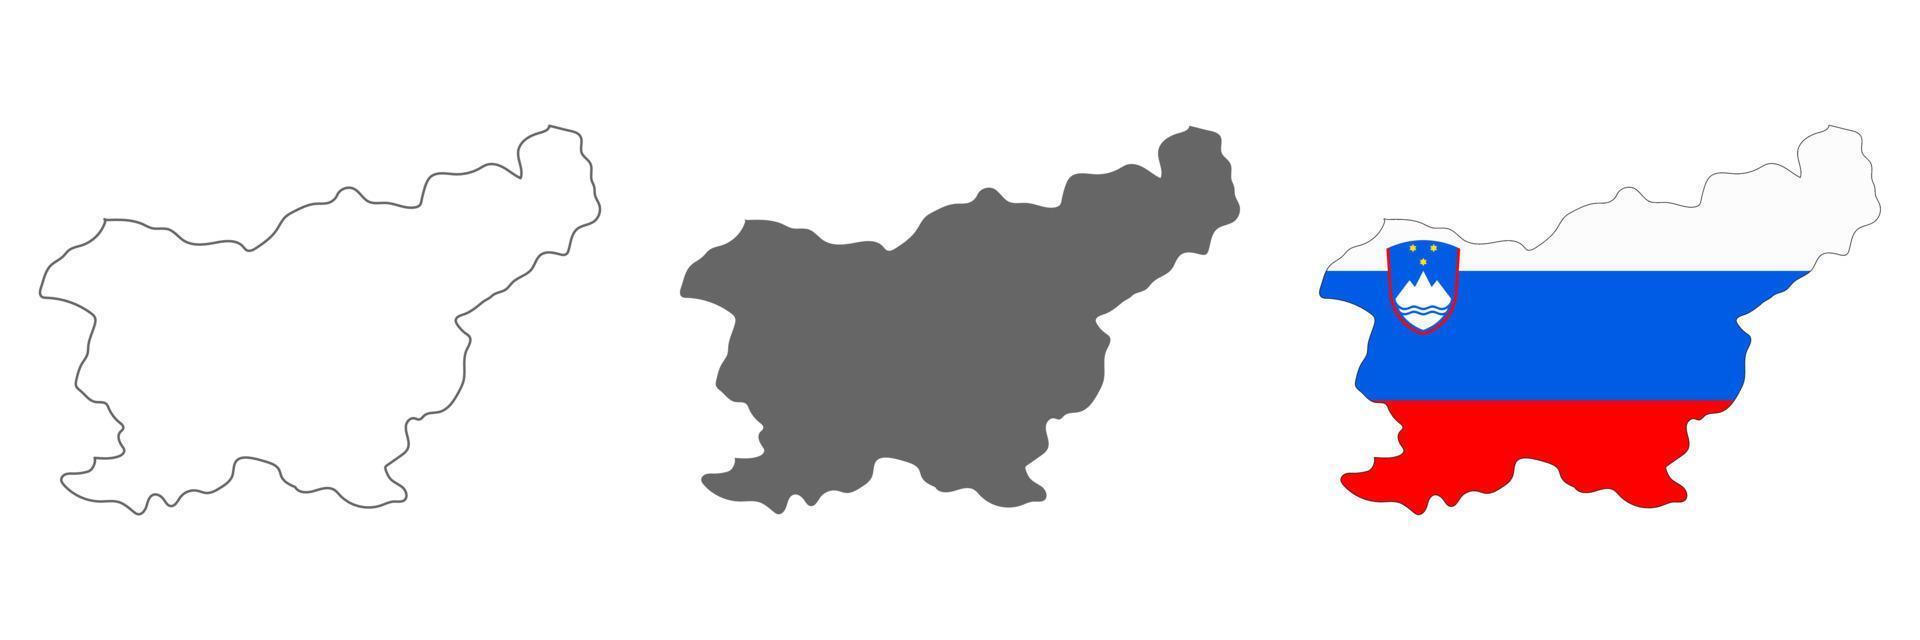 zeer gedetailleerde kaart van slovenië met randen geïsoleerd op de achtergrond vector